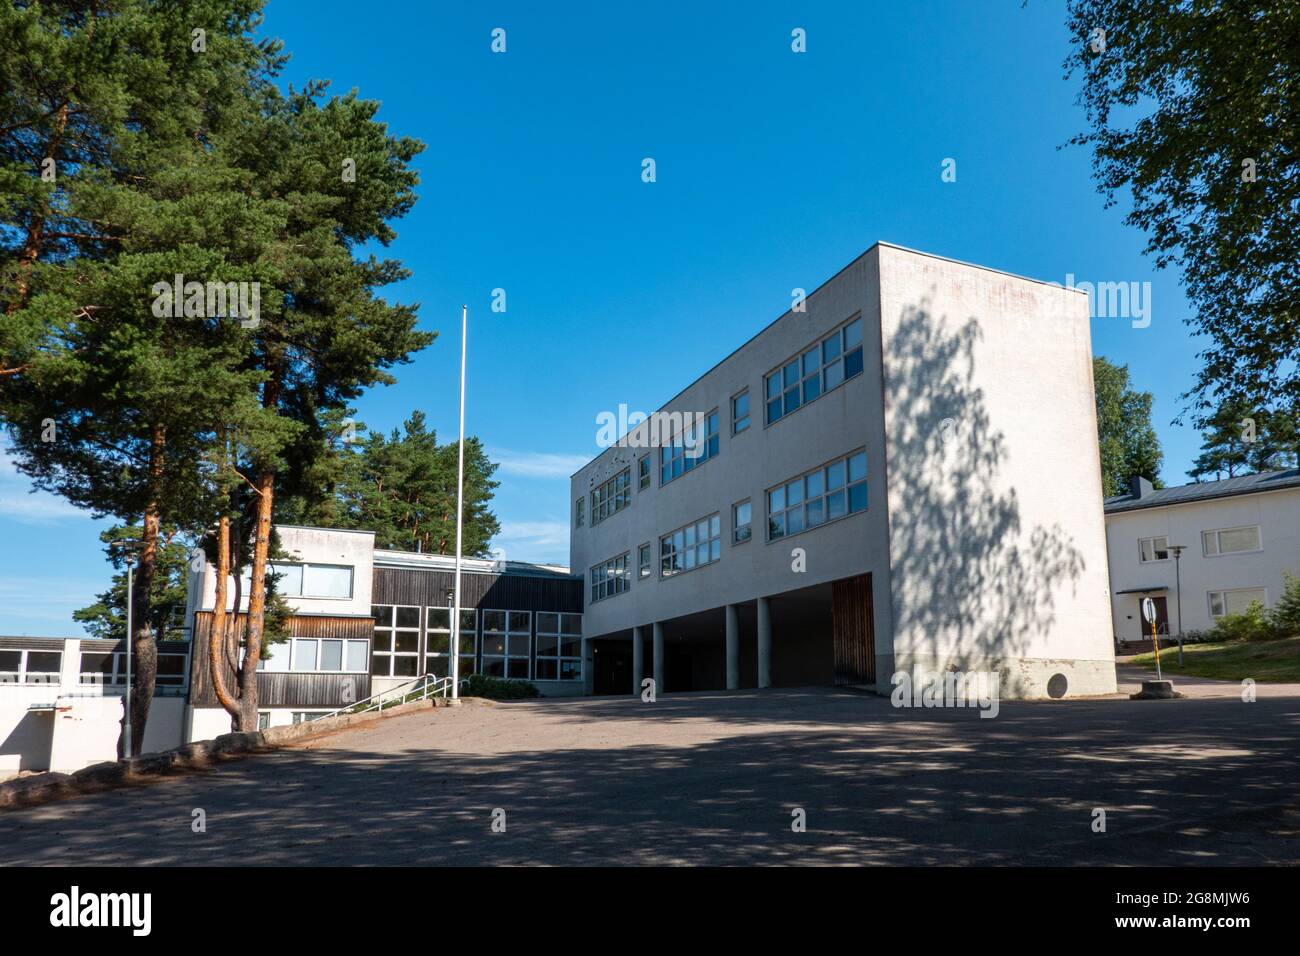 Tehtaanmäen ala-aste, un bâtiment scolaire conçu par l'architecte Alvar Aalto, à Inkeroinen, en Finlande Banque D'Images